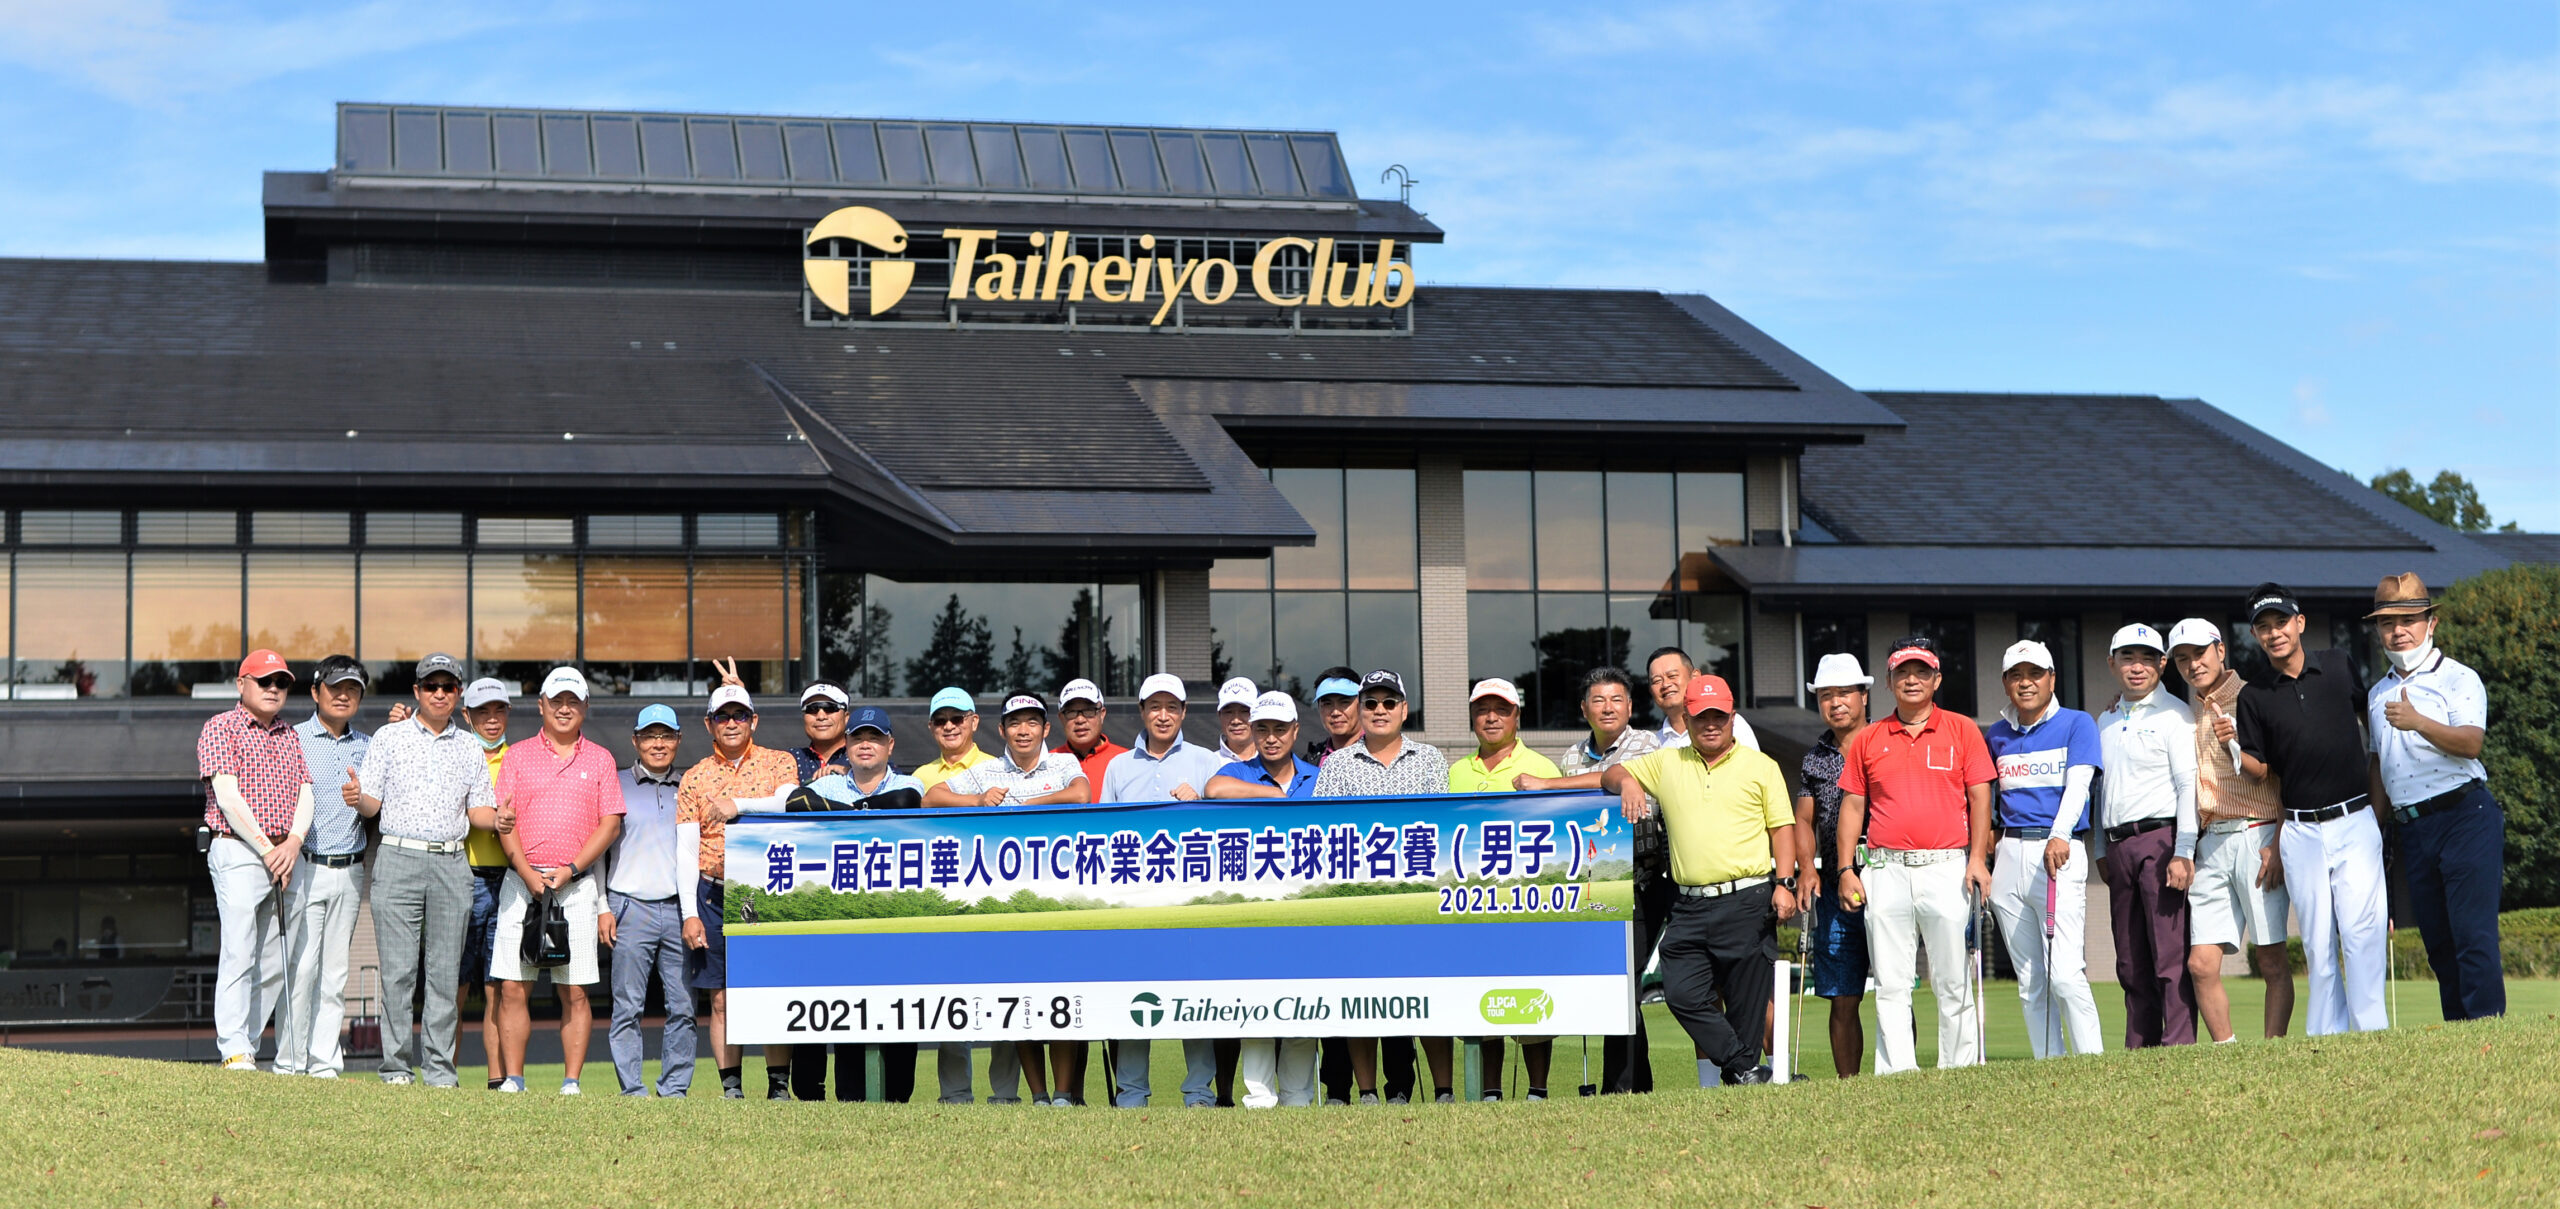 第一届在日华人OTC杯业余高尔球排名赛(男子)第一届在日华人OTC杯业余高尔球排名赛(男子)